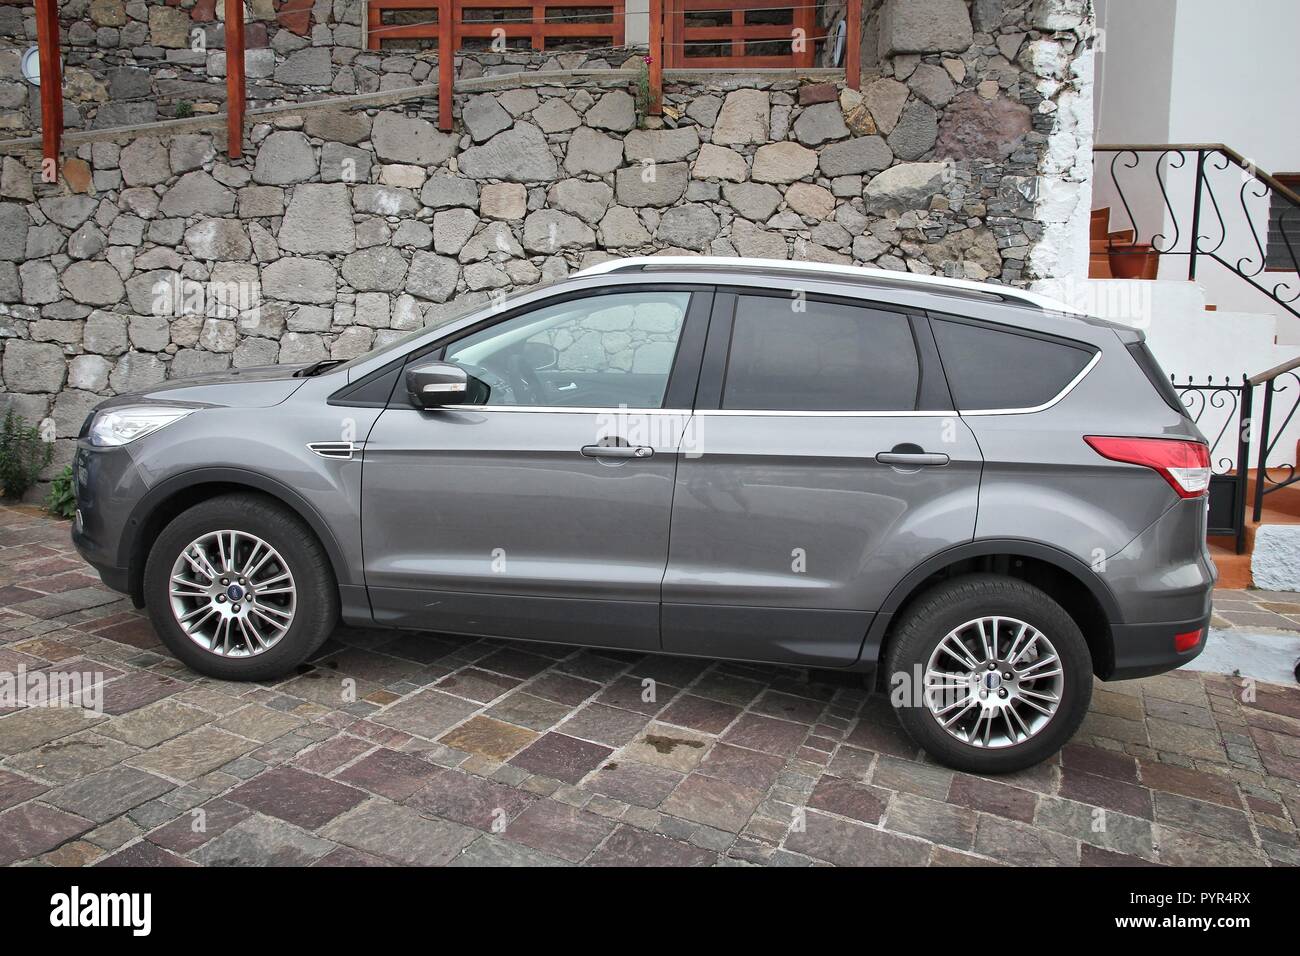 GRAN CANARIA, ESPAGNE - décembre 5, 2015 : Ford Kuga SUV compact voiture garée à Gran Canaria, Espagne. Il y a 593 voitures par habitant en Espagne. Banque D'Images